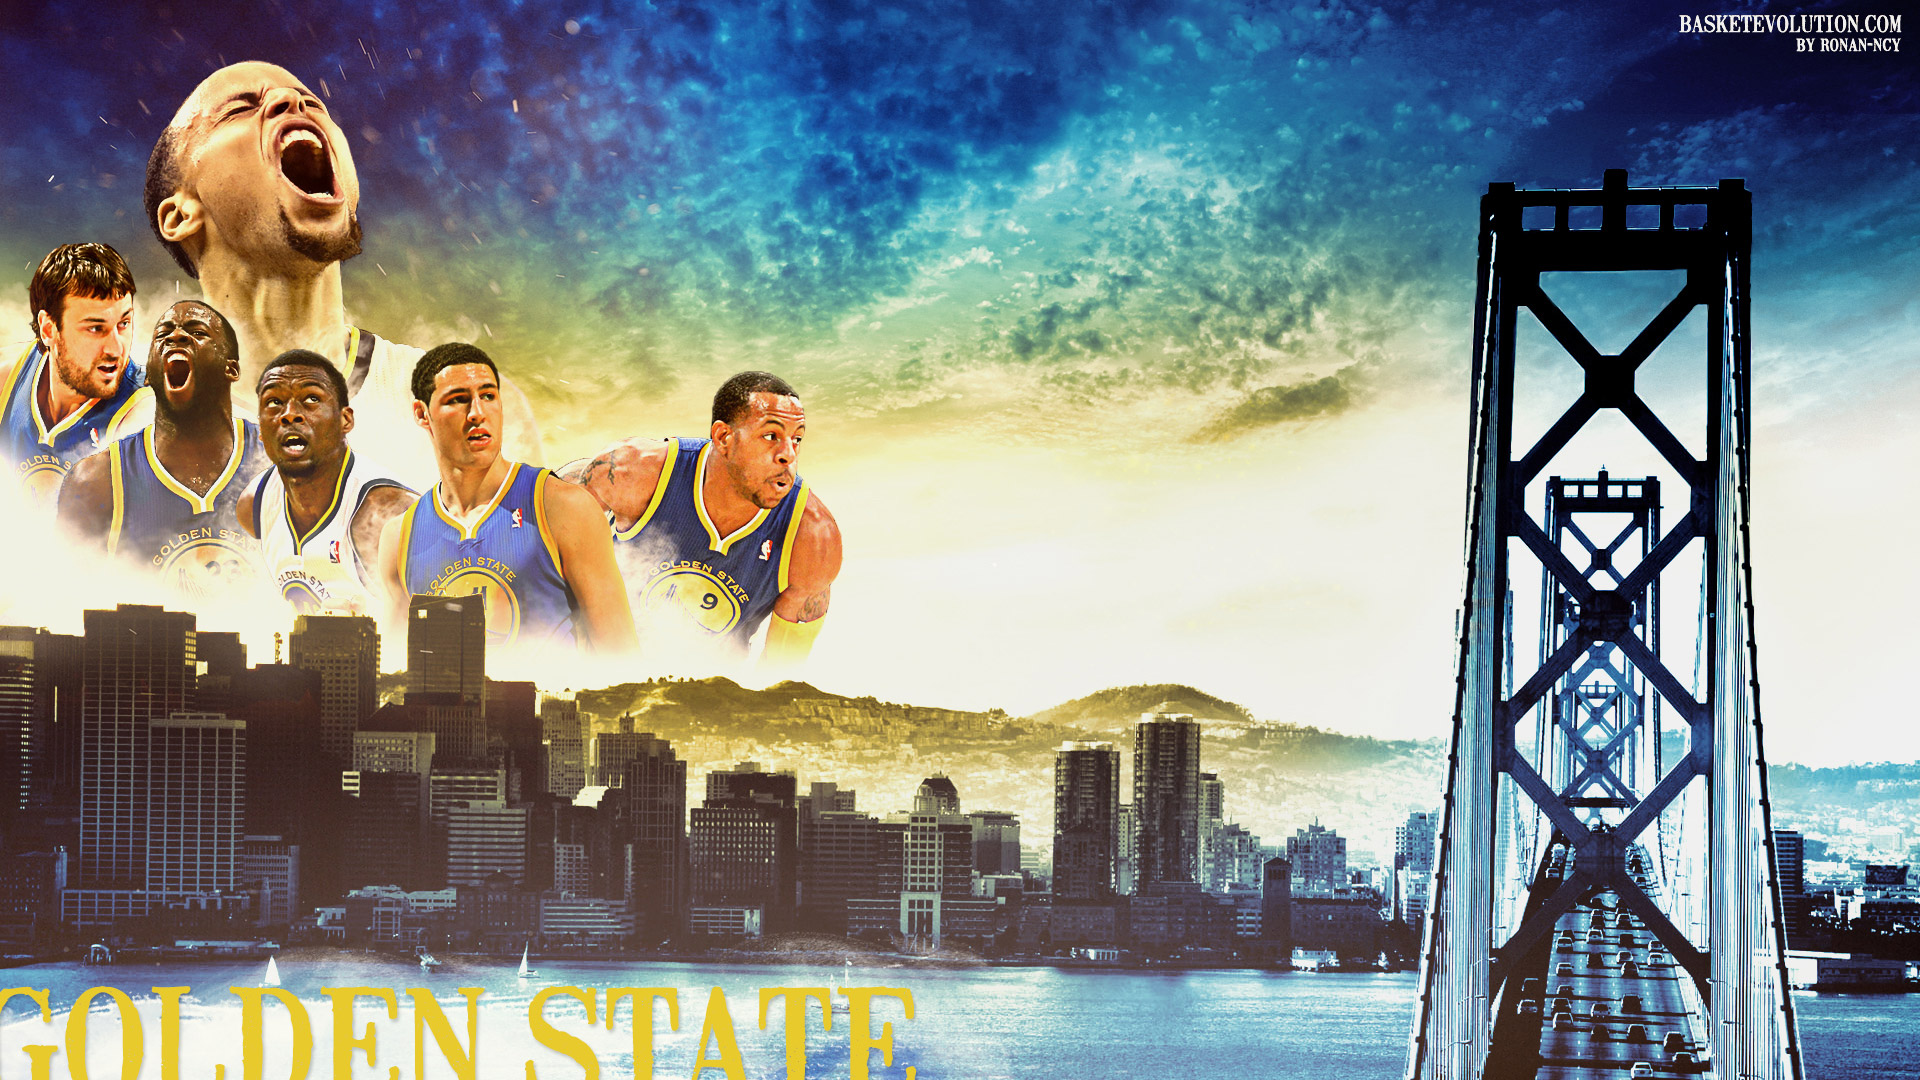 Golden State Warriors Wallpaper Basketball